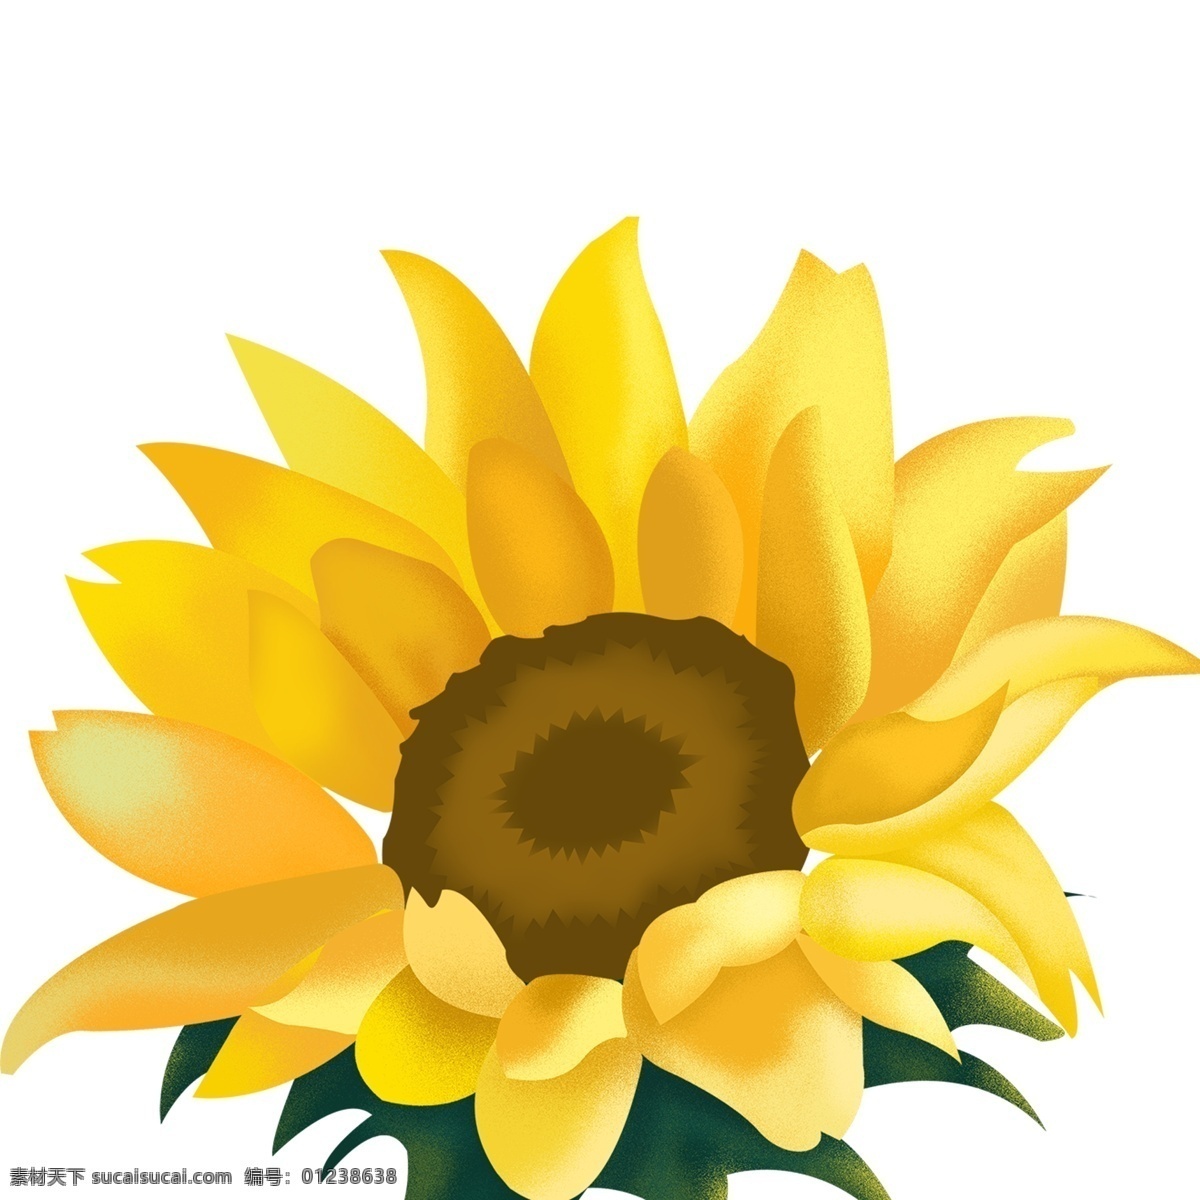 黄色 花朵 向日葵 装饰 植物 卡通 彩色 水彩 创意 手绘 绘画元素 现代 简约 图案